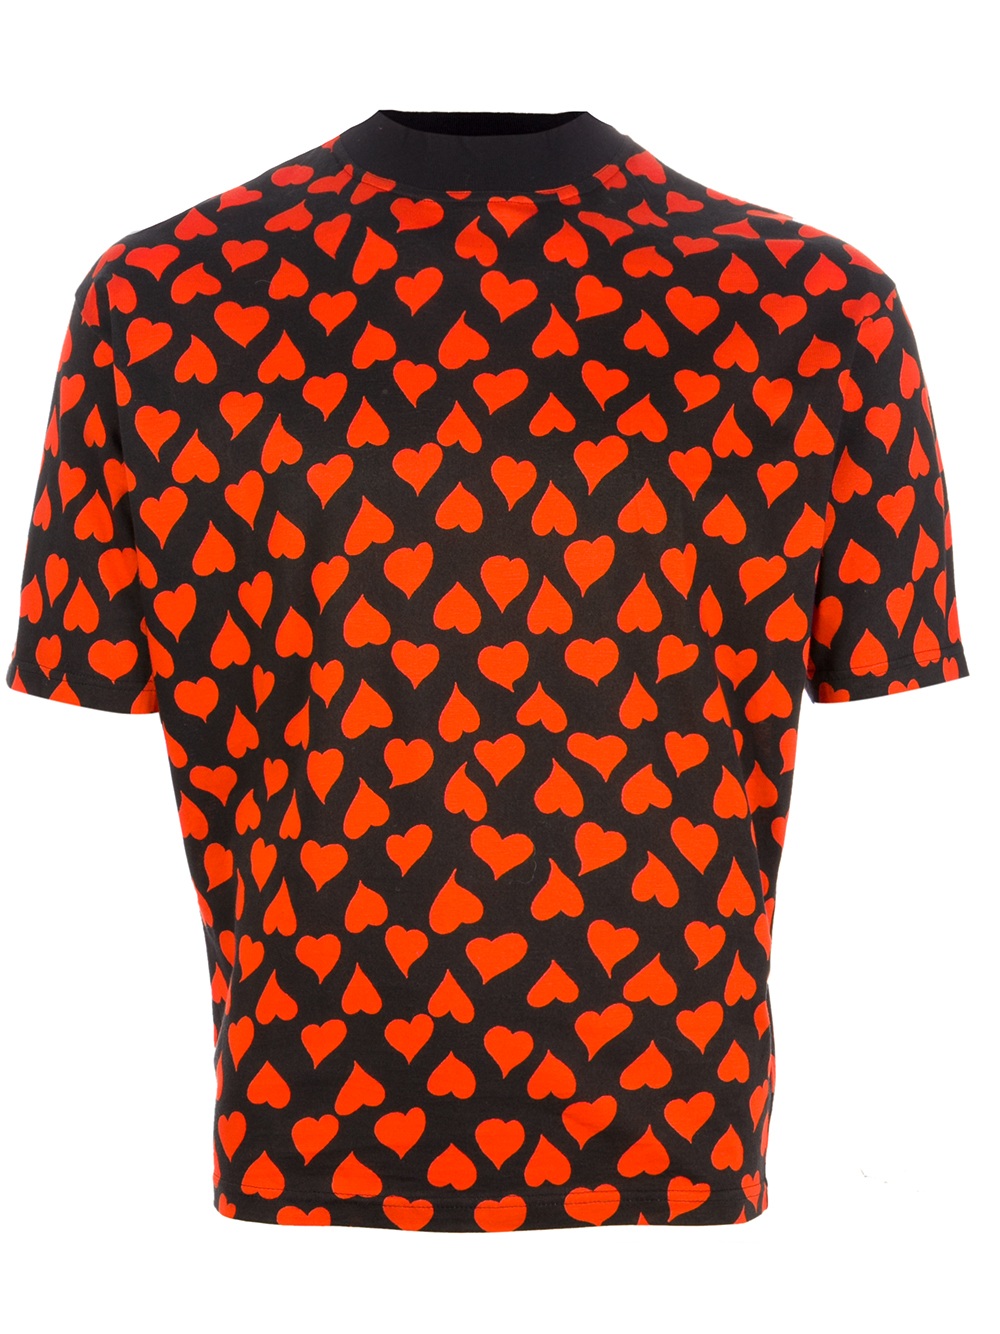 Jean Paul Gaultier Heart Print T-shirt in Black (Orange) for Men - Lyst